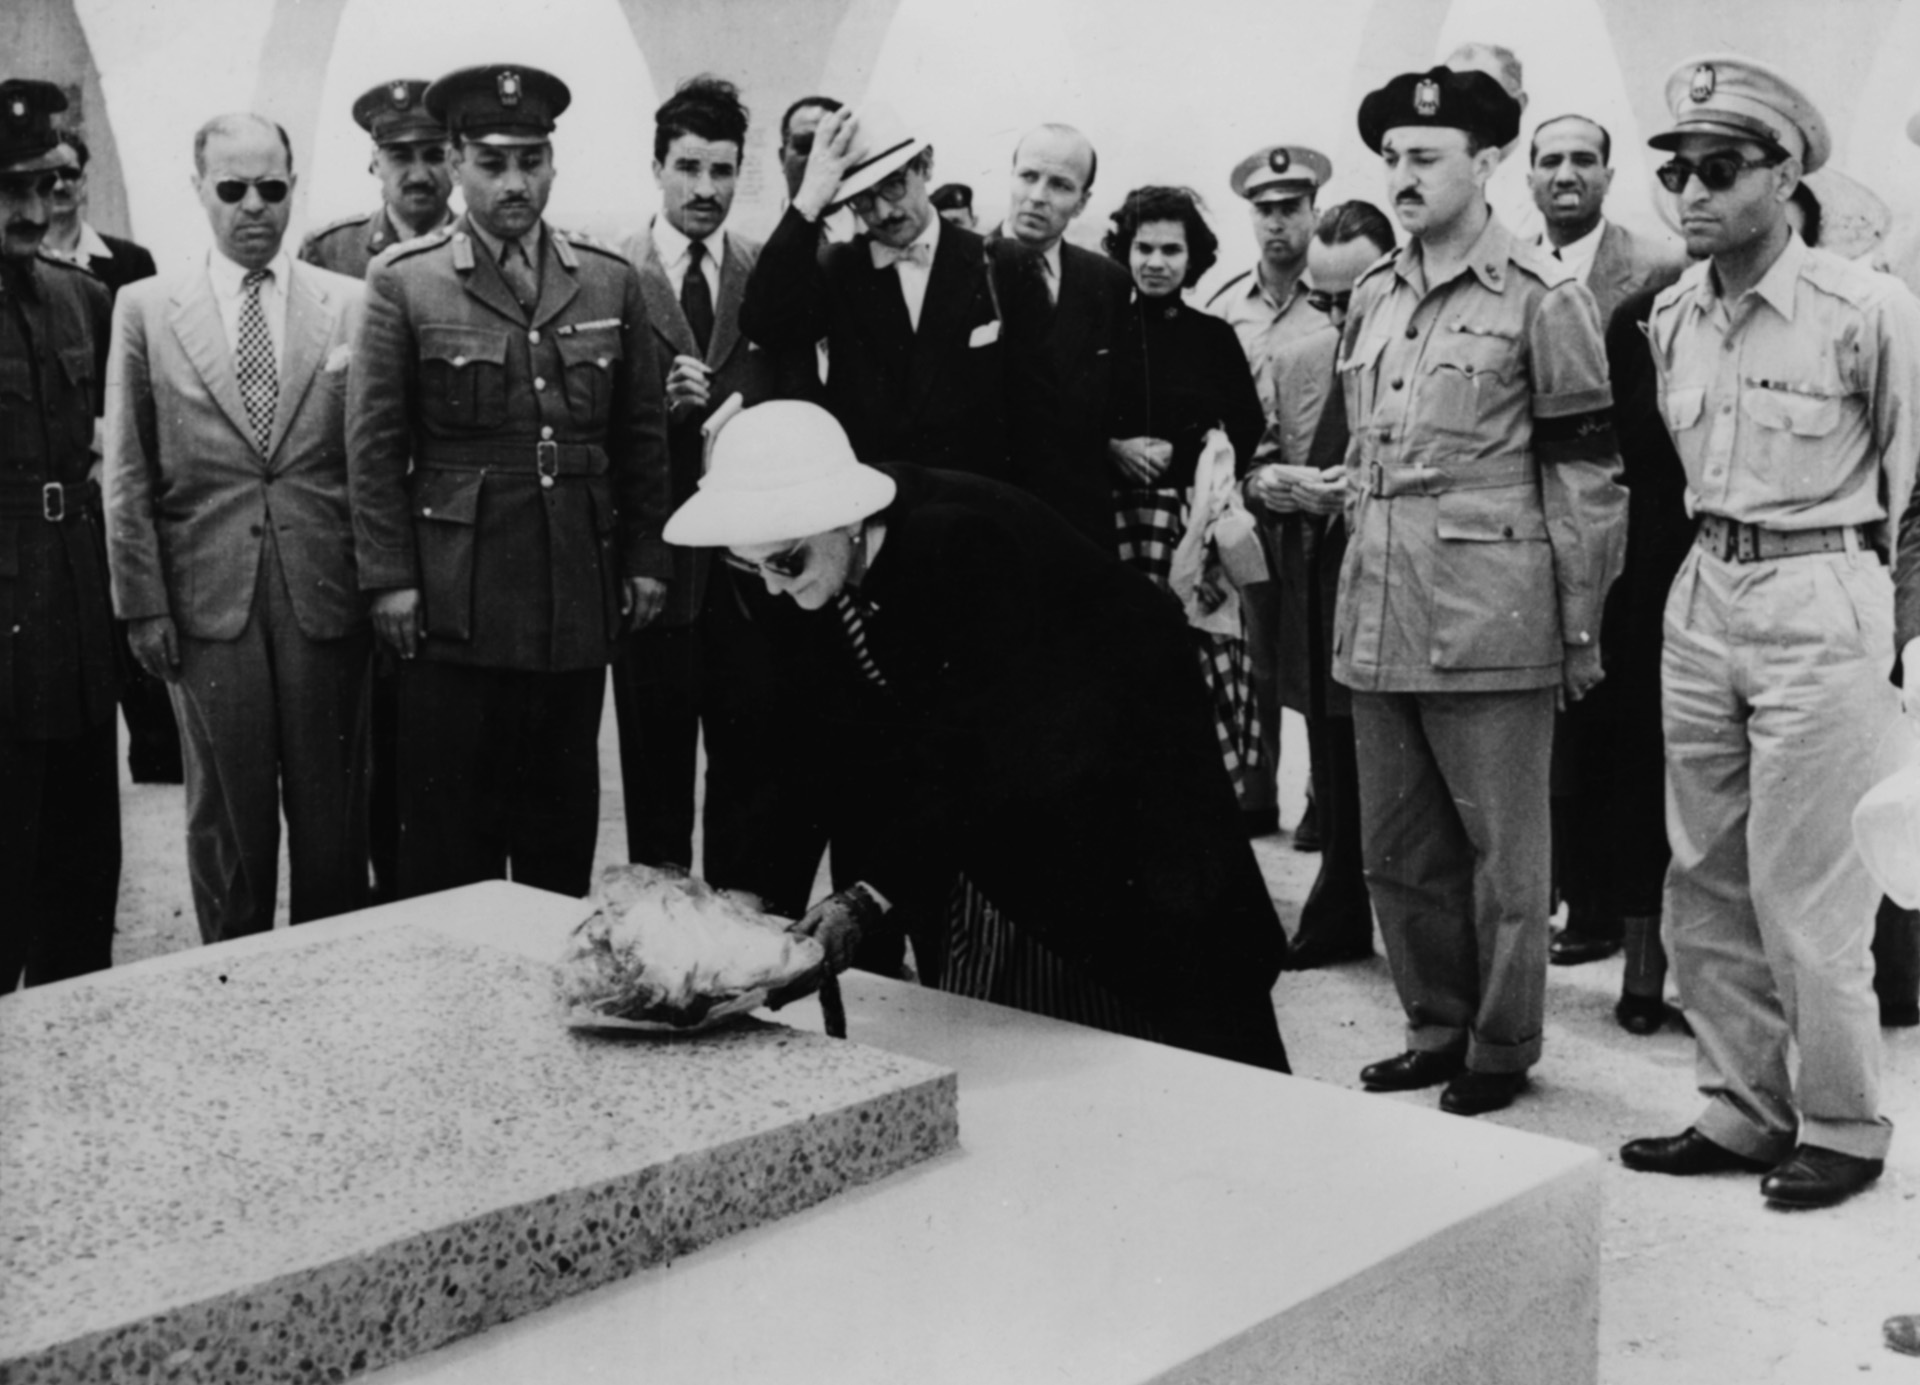 Lucy Rommel, la viuda del mariscal de campo, coloca una corona de flores en el cementerio de El Alamein, escenario de una sangrienta batalla. Erwin Rommel se suicidó ante la amenaza de Hitler de enviar a su familia a los campos de exterminio (Photo by Keystone/Hulton Archive/Getty Images)